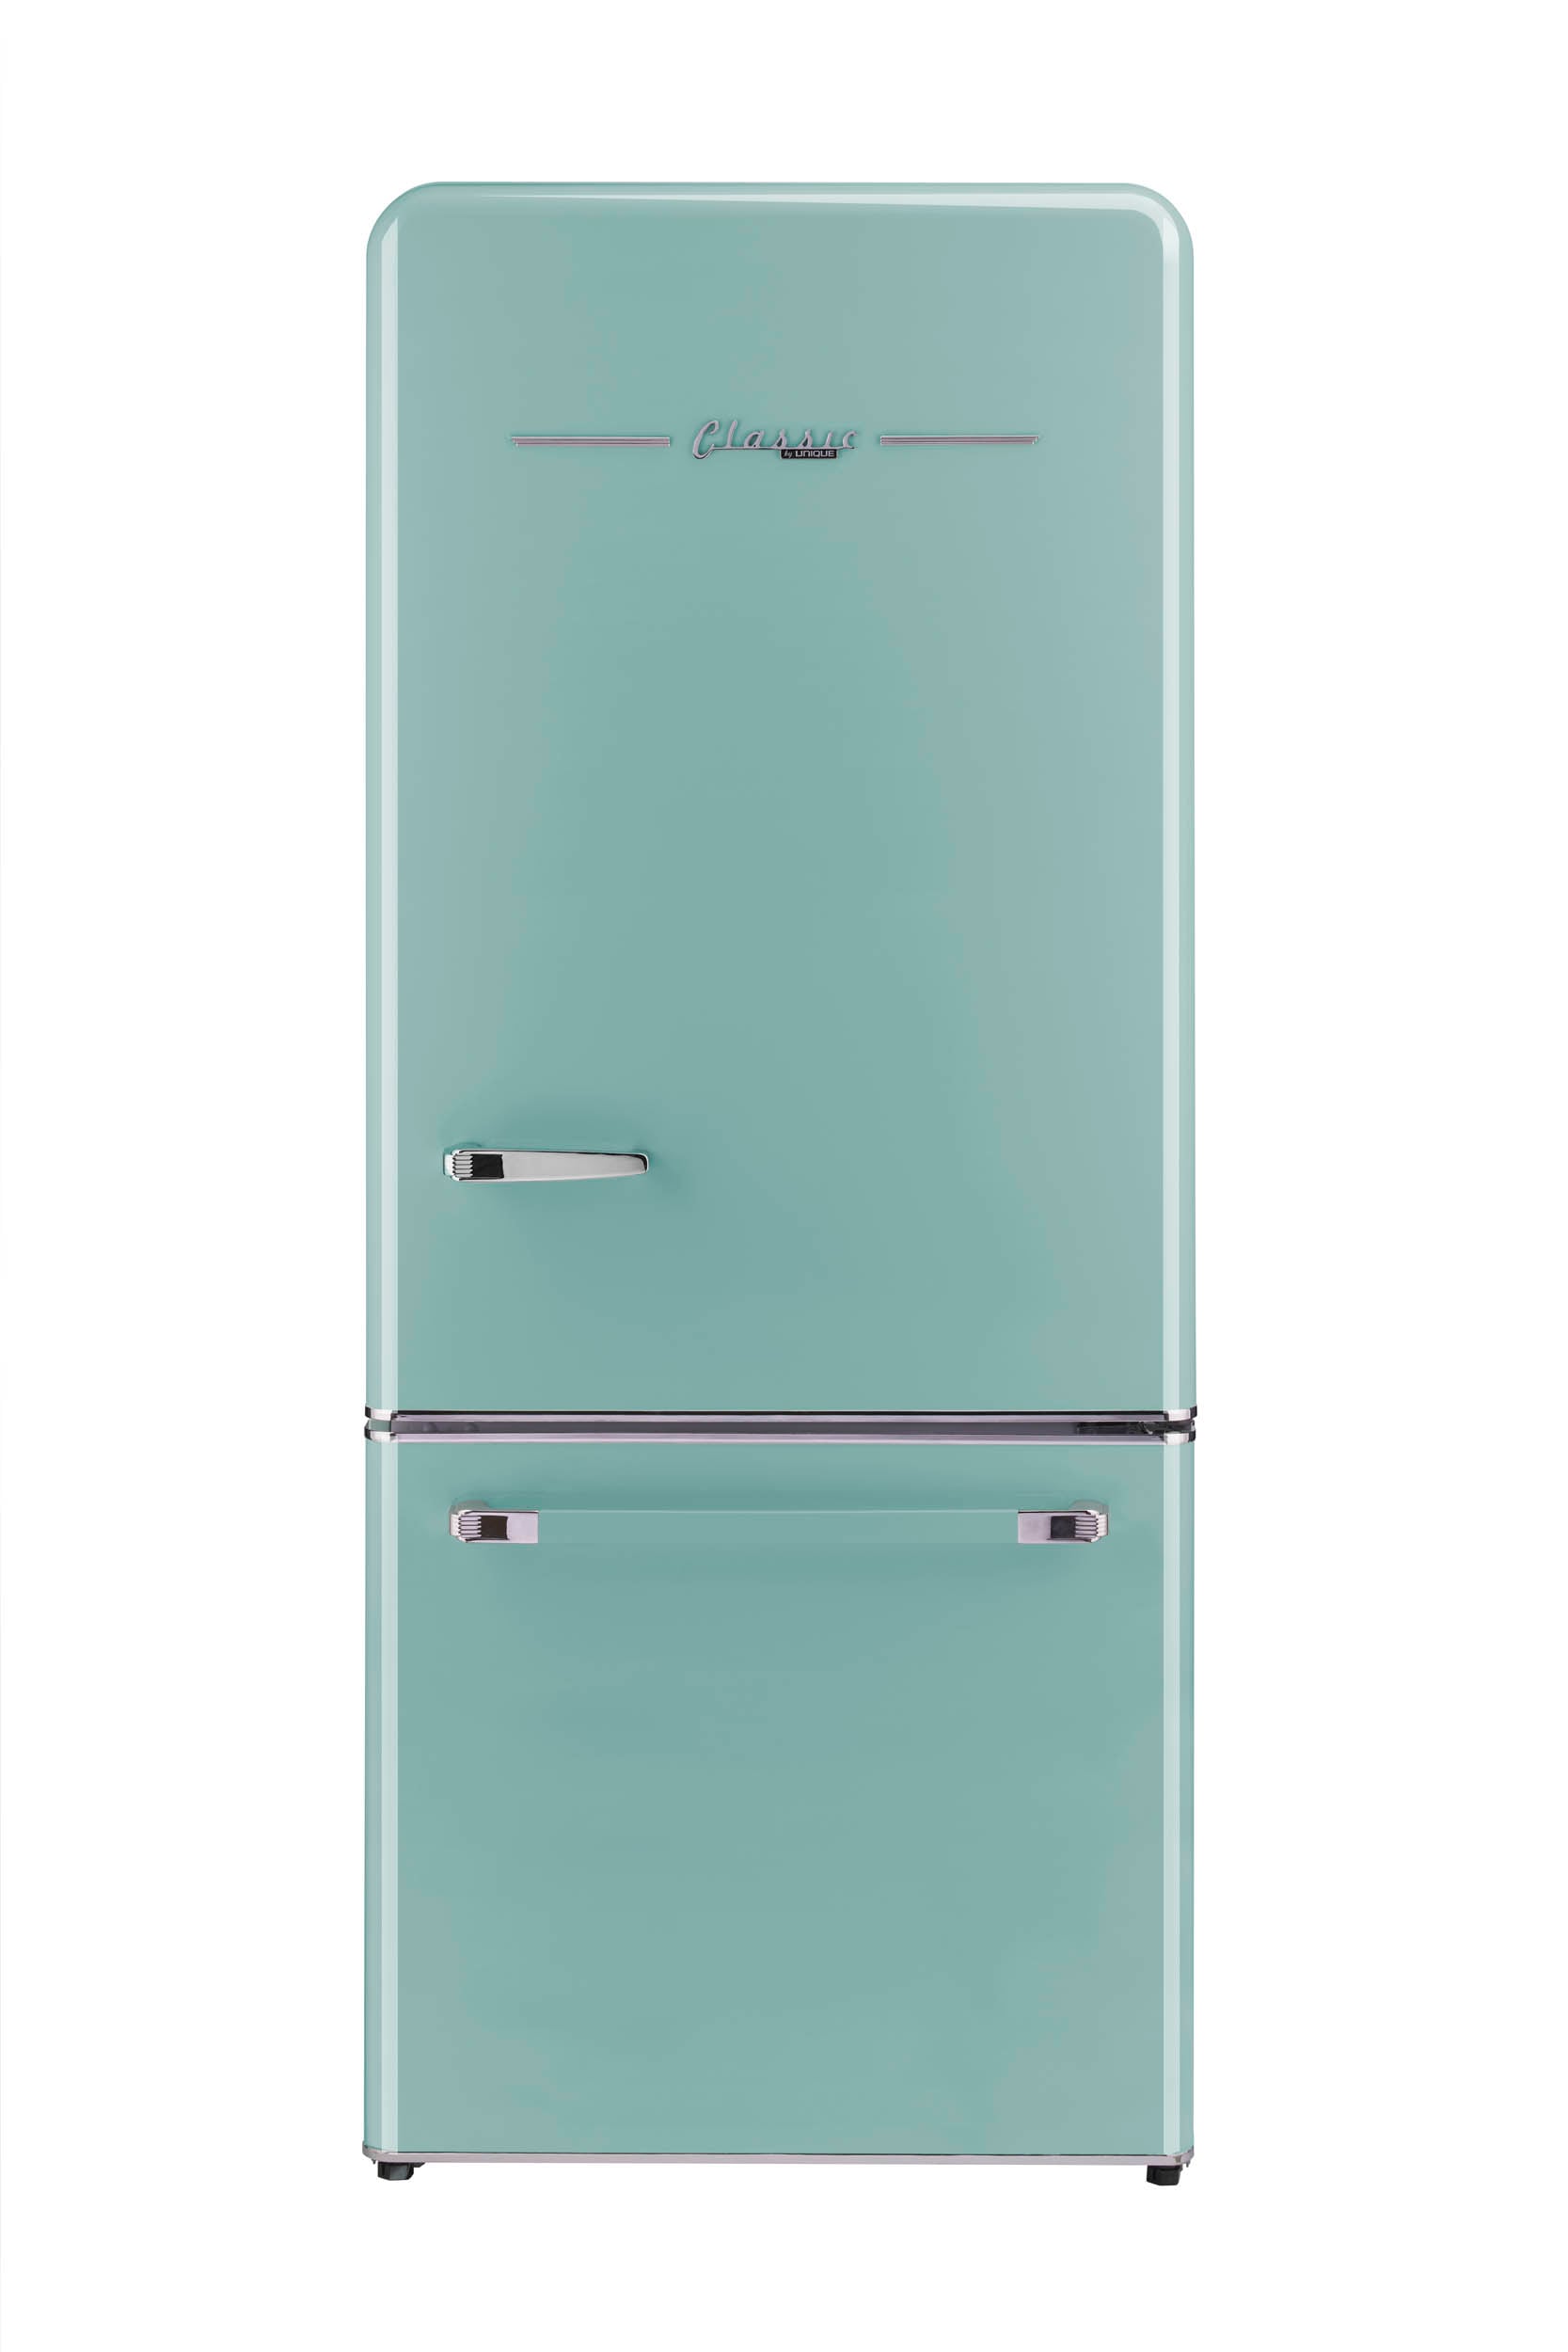 Unique Appliances Réfrigérateur à congélateur inférieur ENERGY STARÂ®  Classic Rétro, 22 p